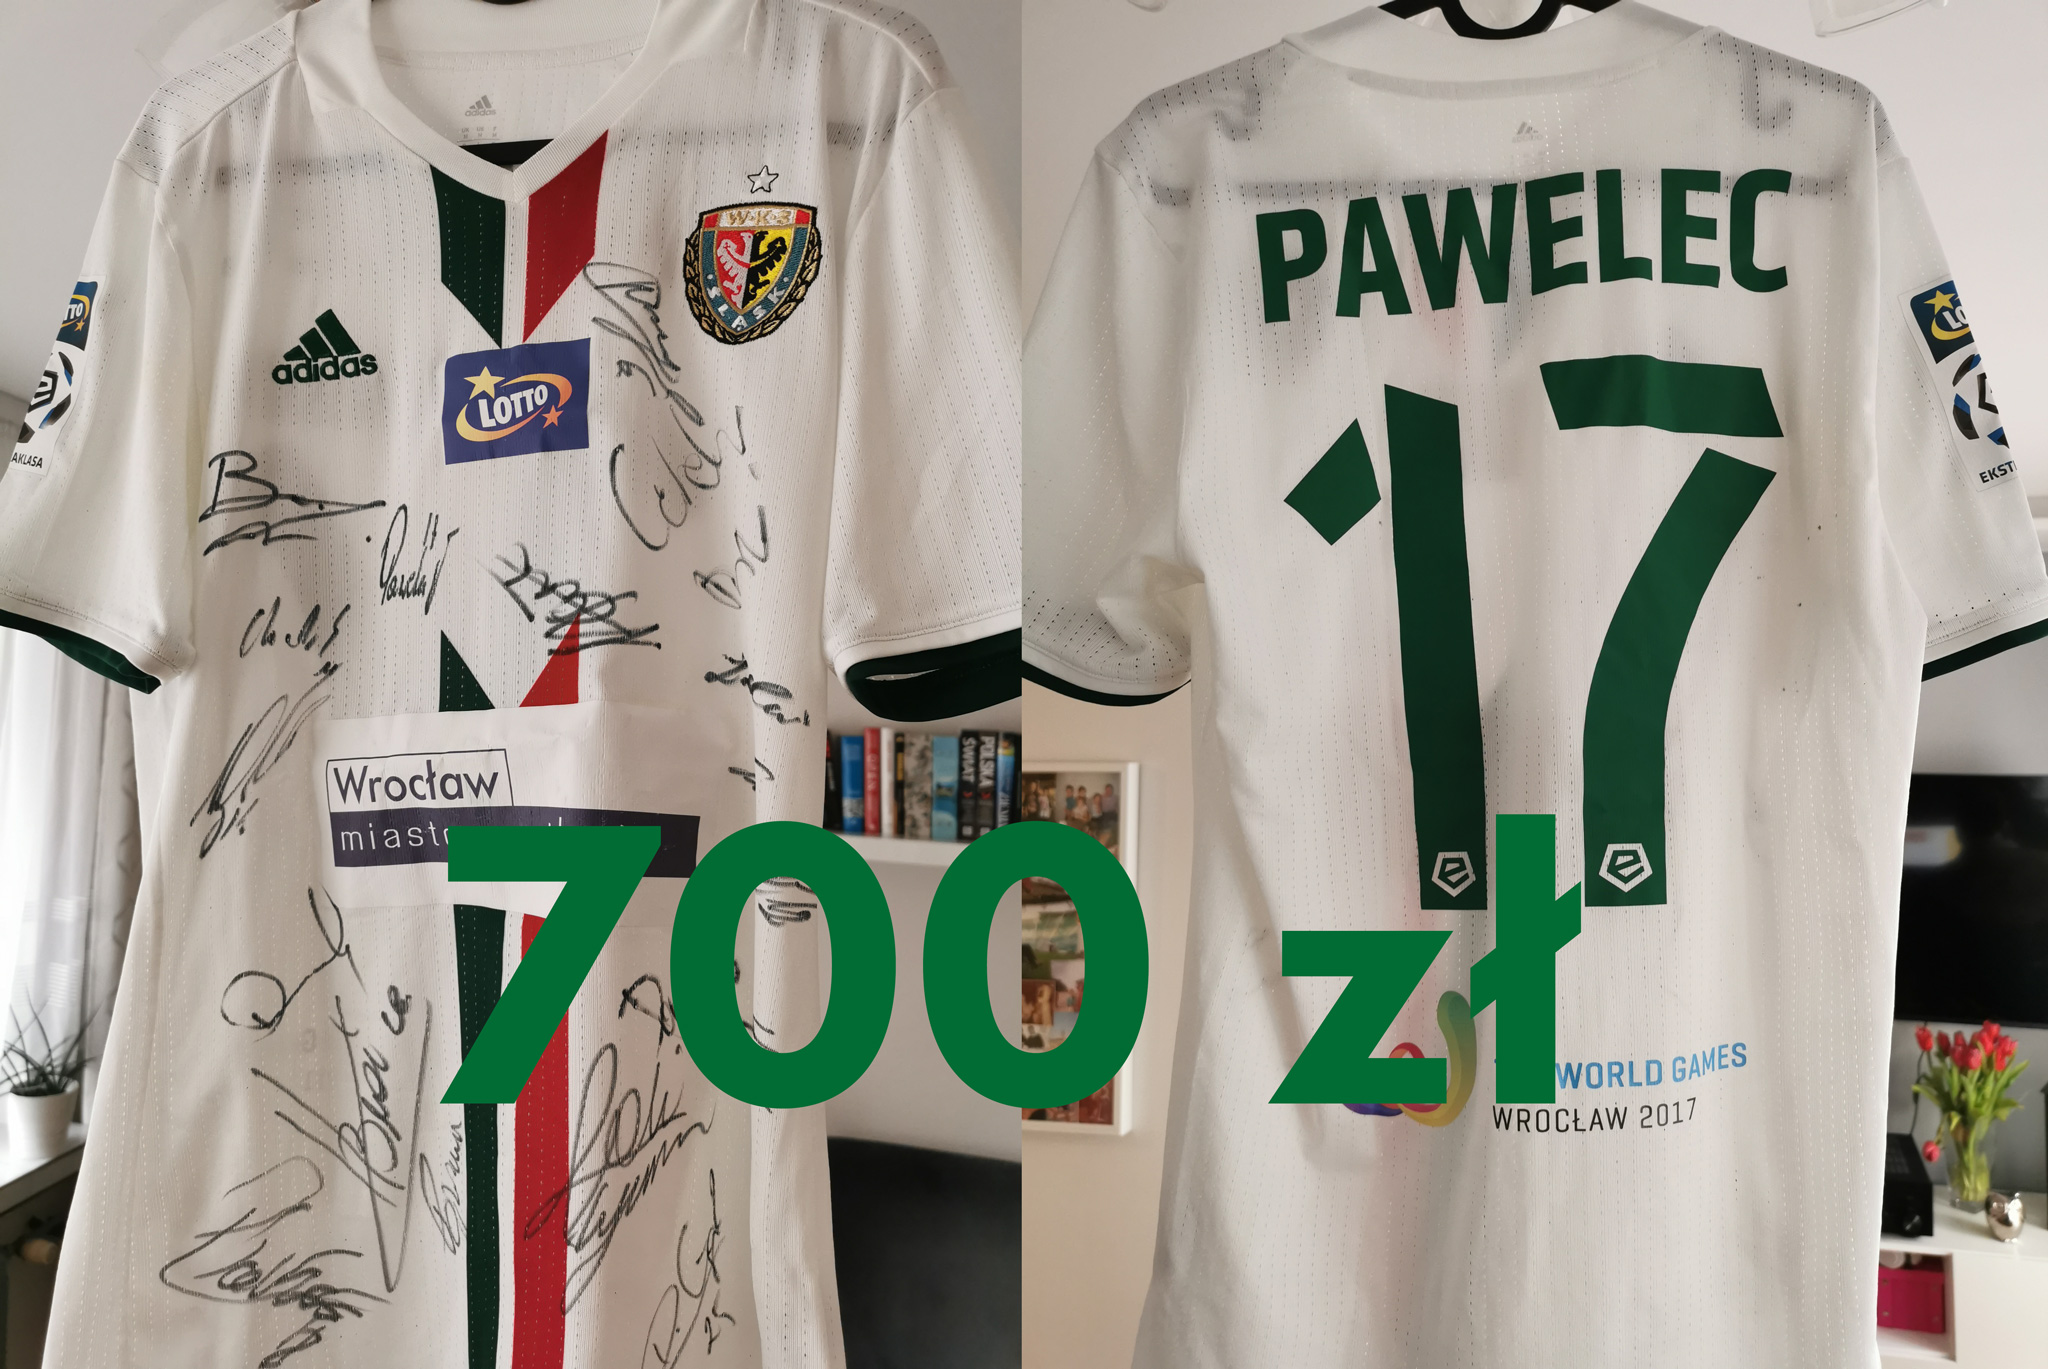 Biała koszulka, z przodu na górze po lewej stronie herb Śląska, po prawej stronie logo addas, na czarno autografy piłkarzy. Tył koszulki Pawelec 17